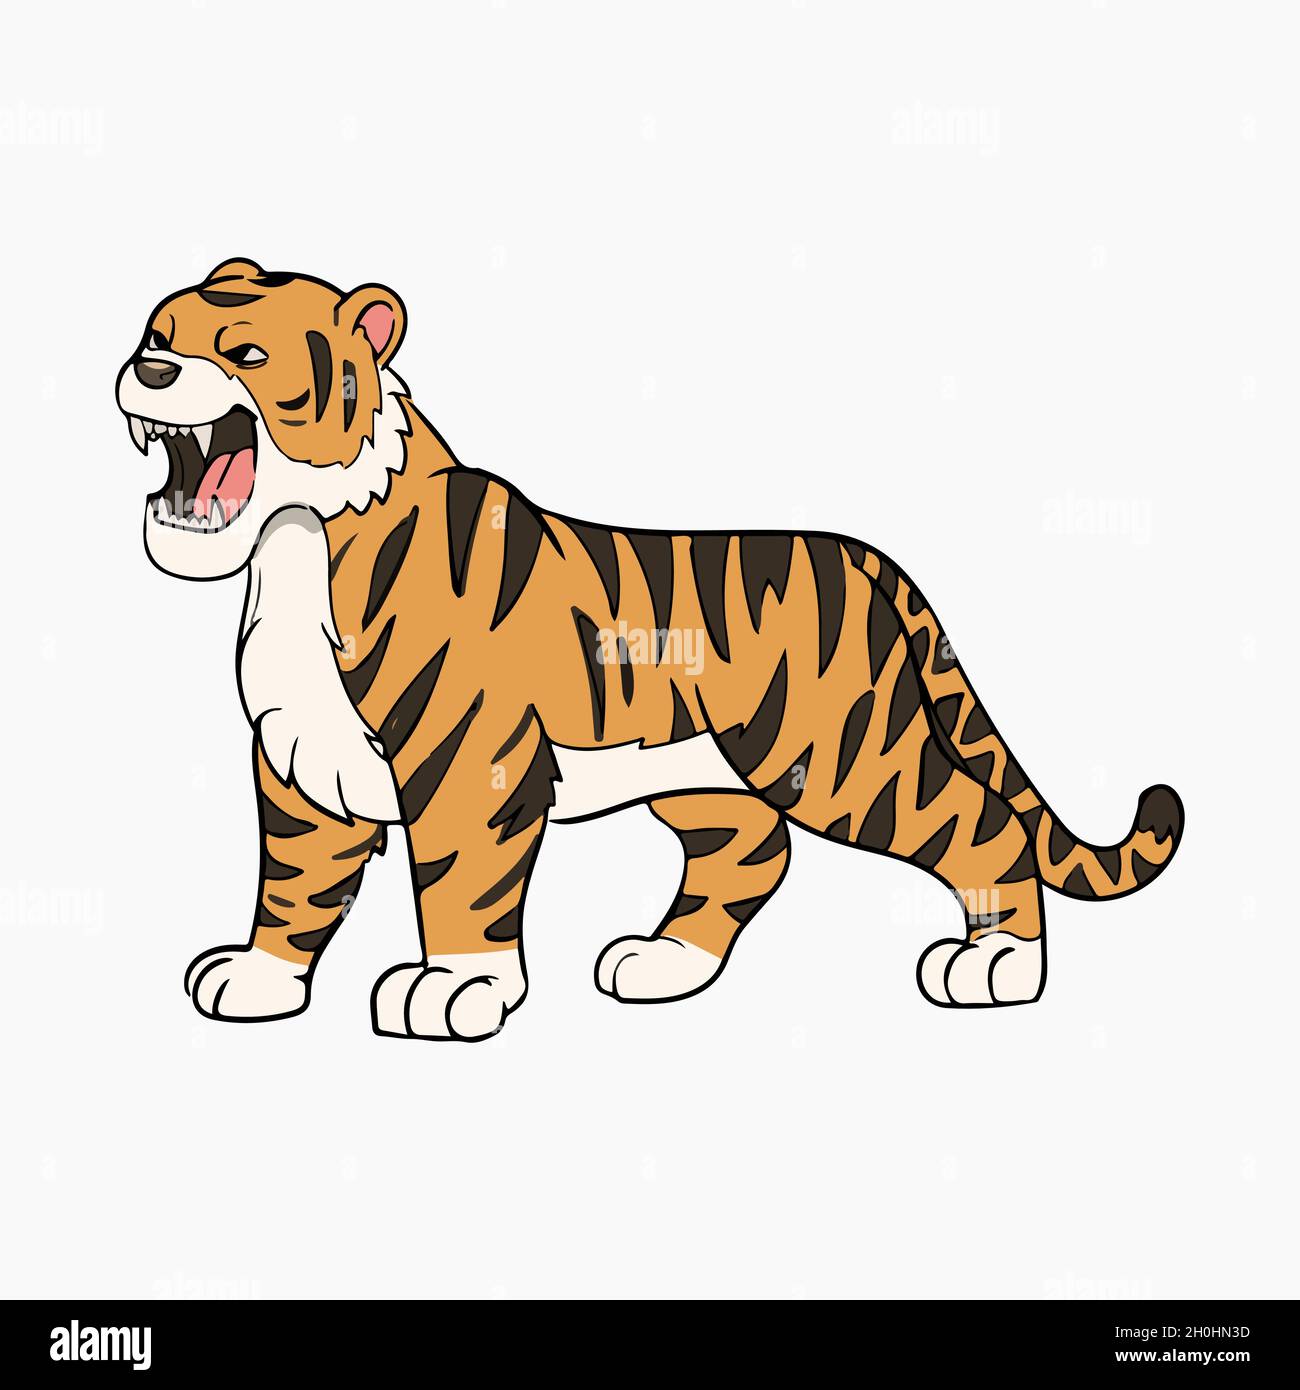 Tiger Roaring Vector Illustration Cartoon Stock Vector Image & Art ...